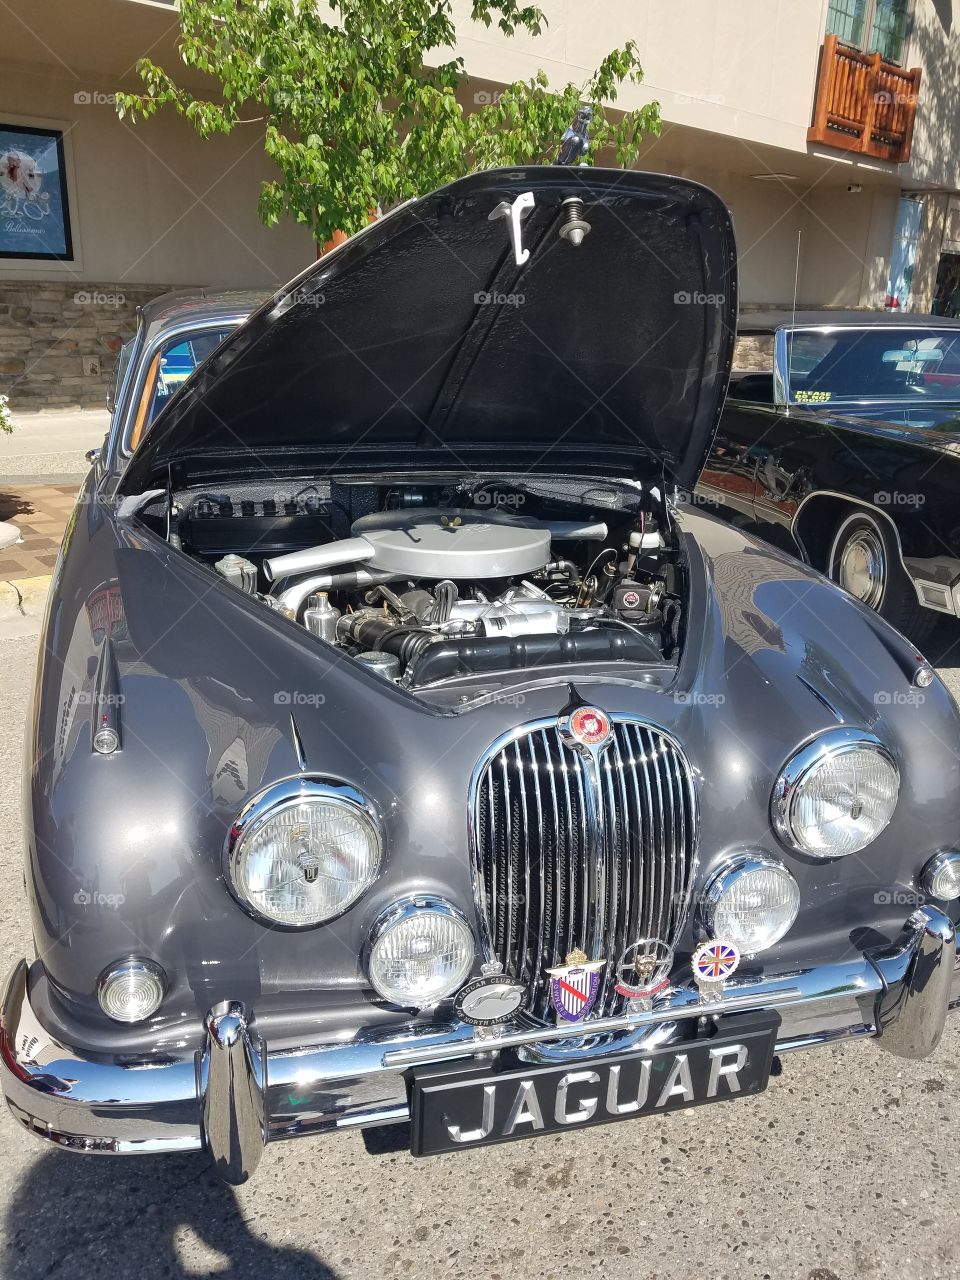 look at this Jaguar